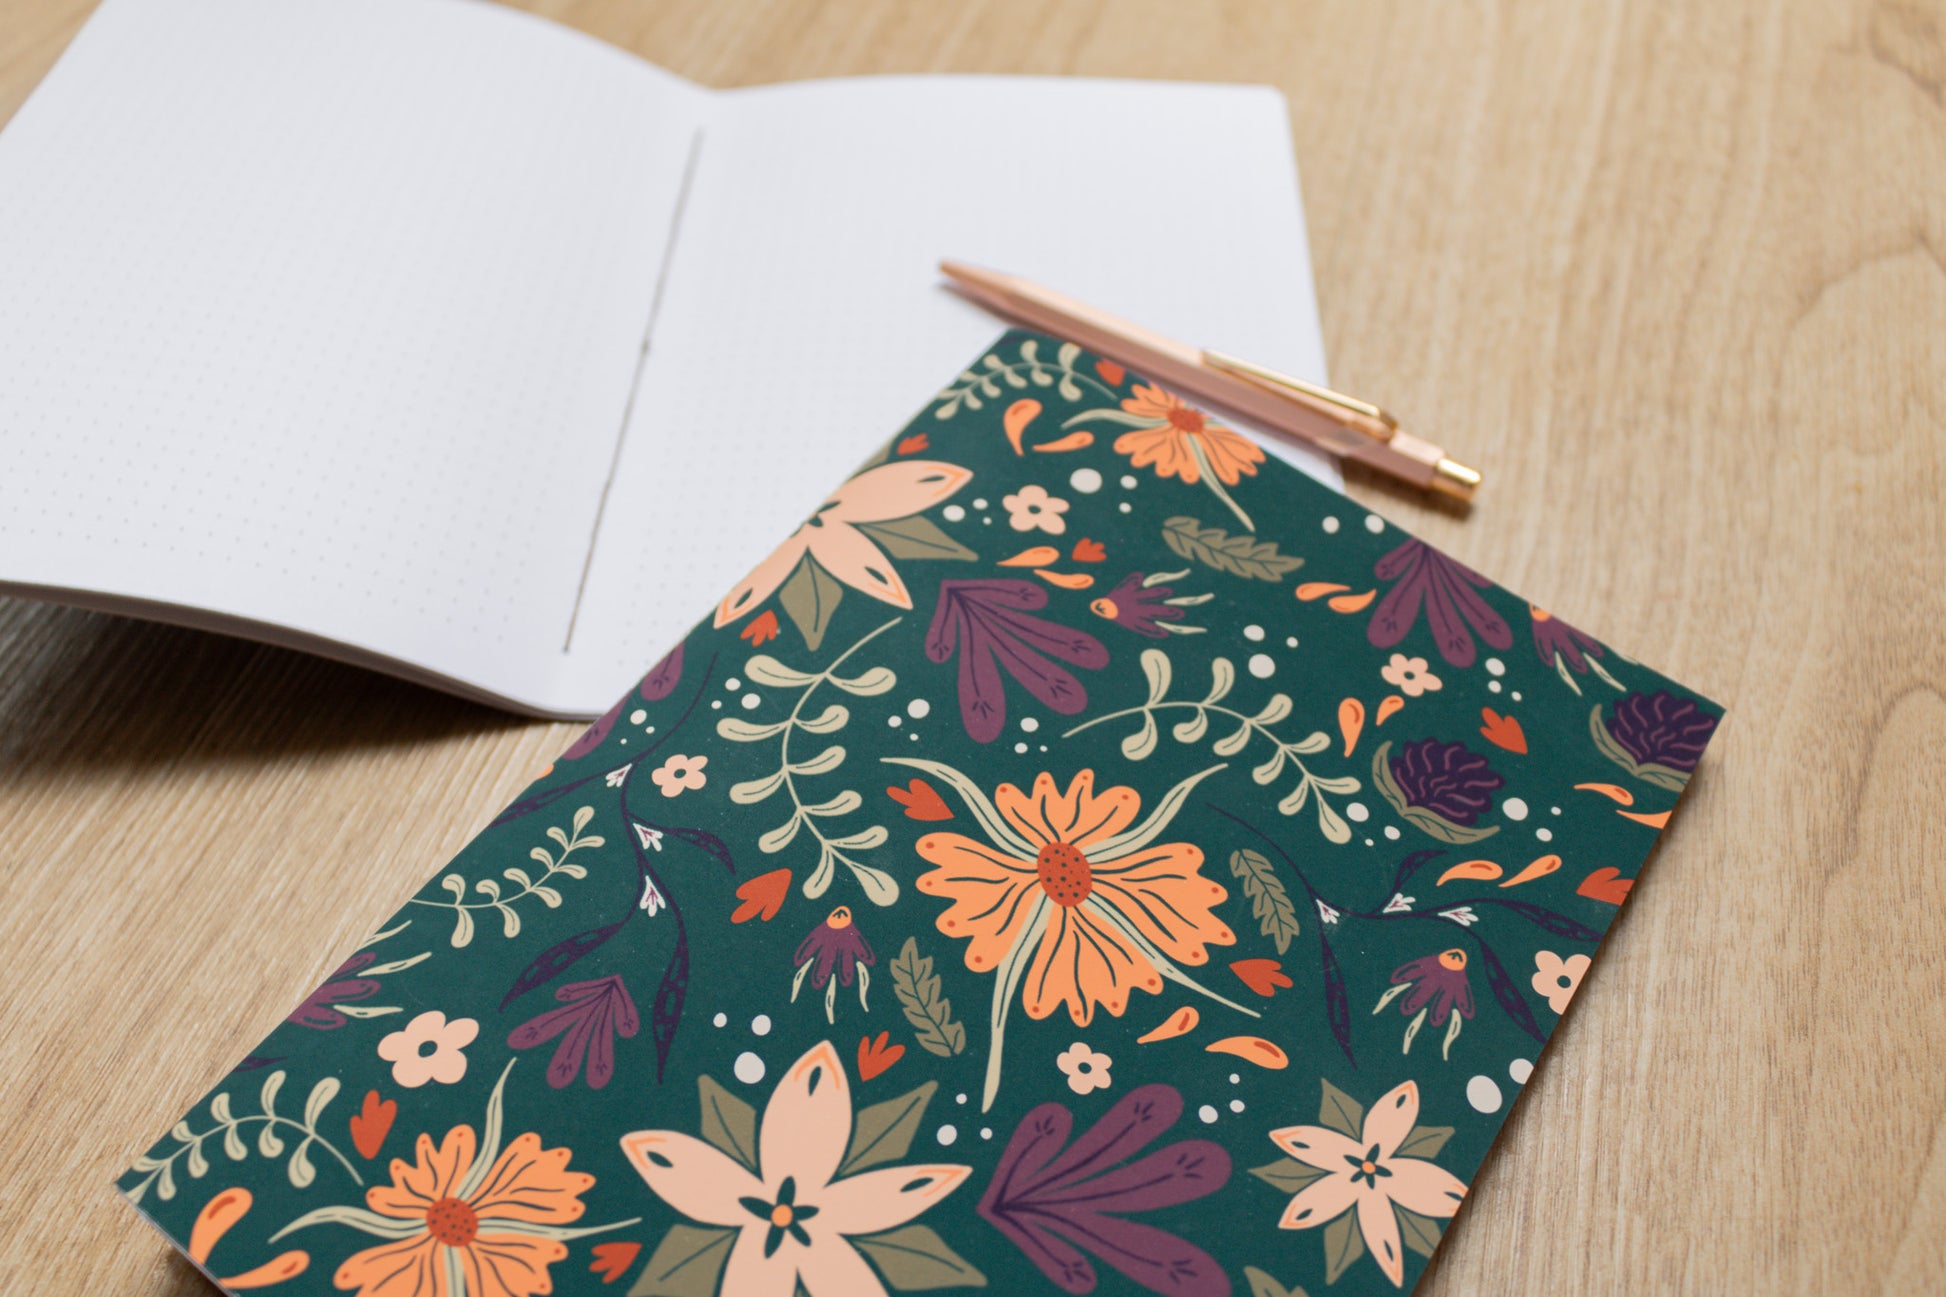 Handmade A5 notebook with autumnal floral design by MellowApricotStudio & KreativWerkstatt24 - close up